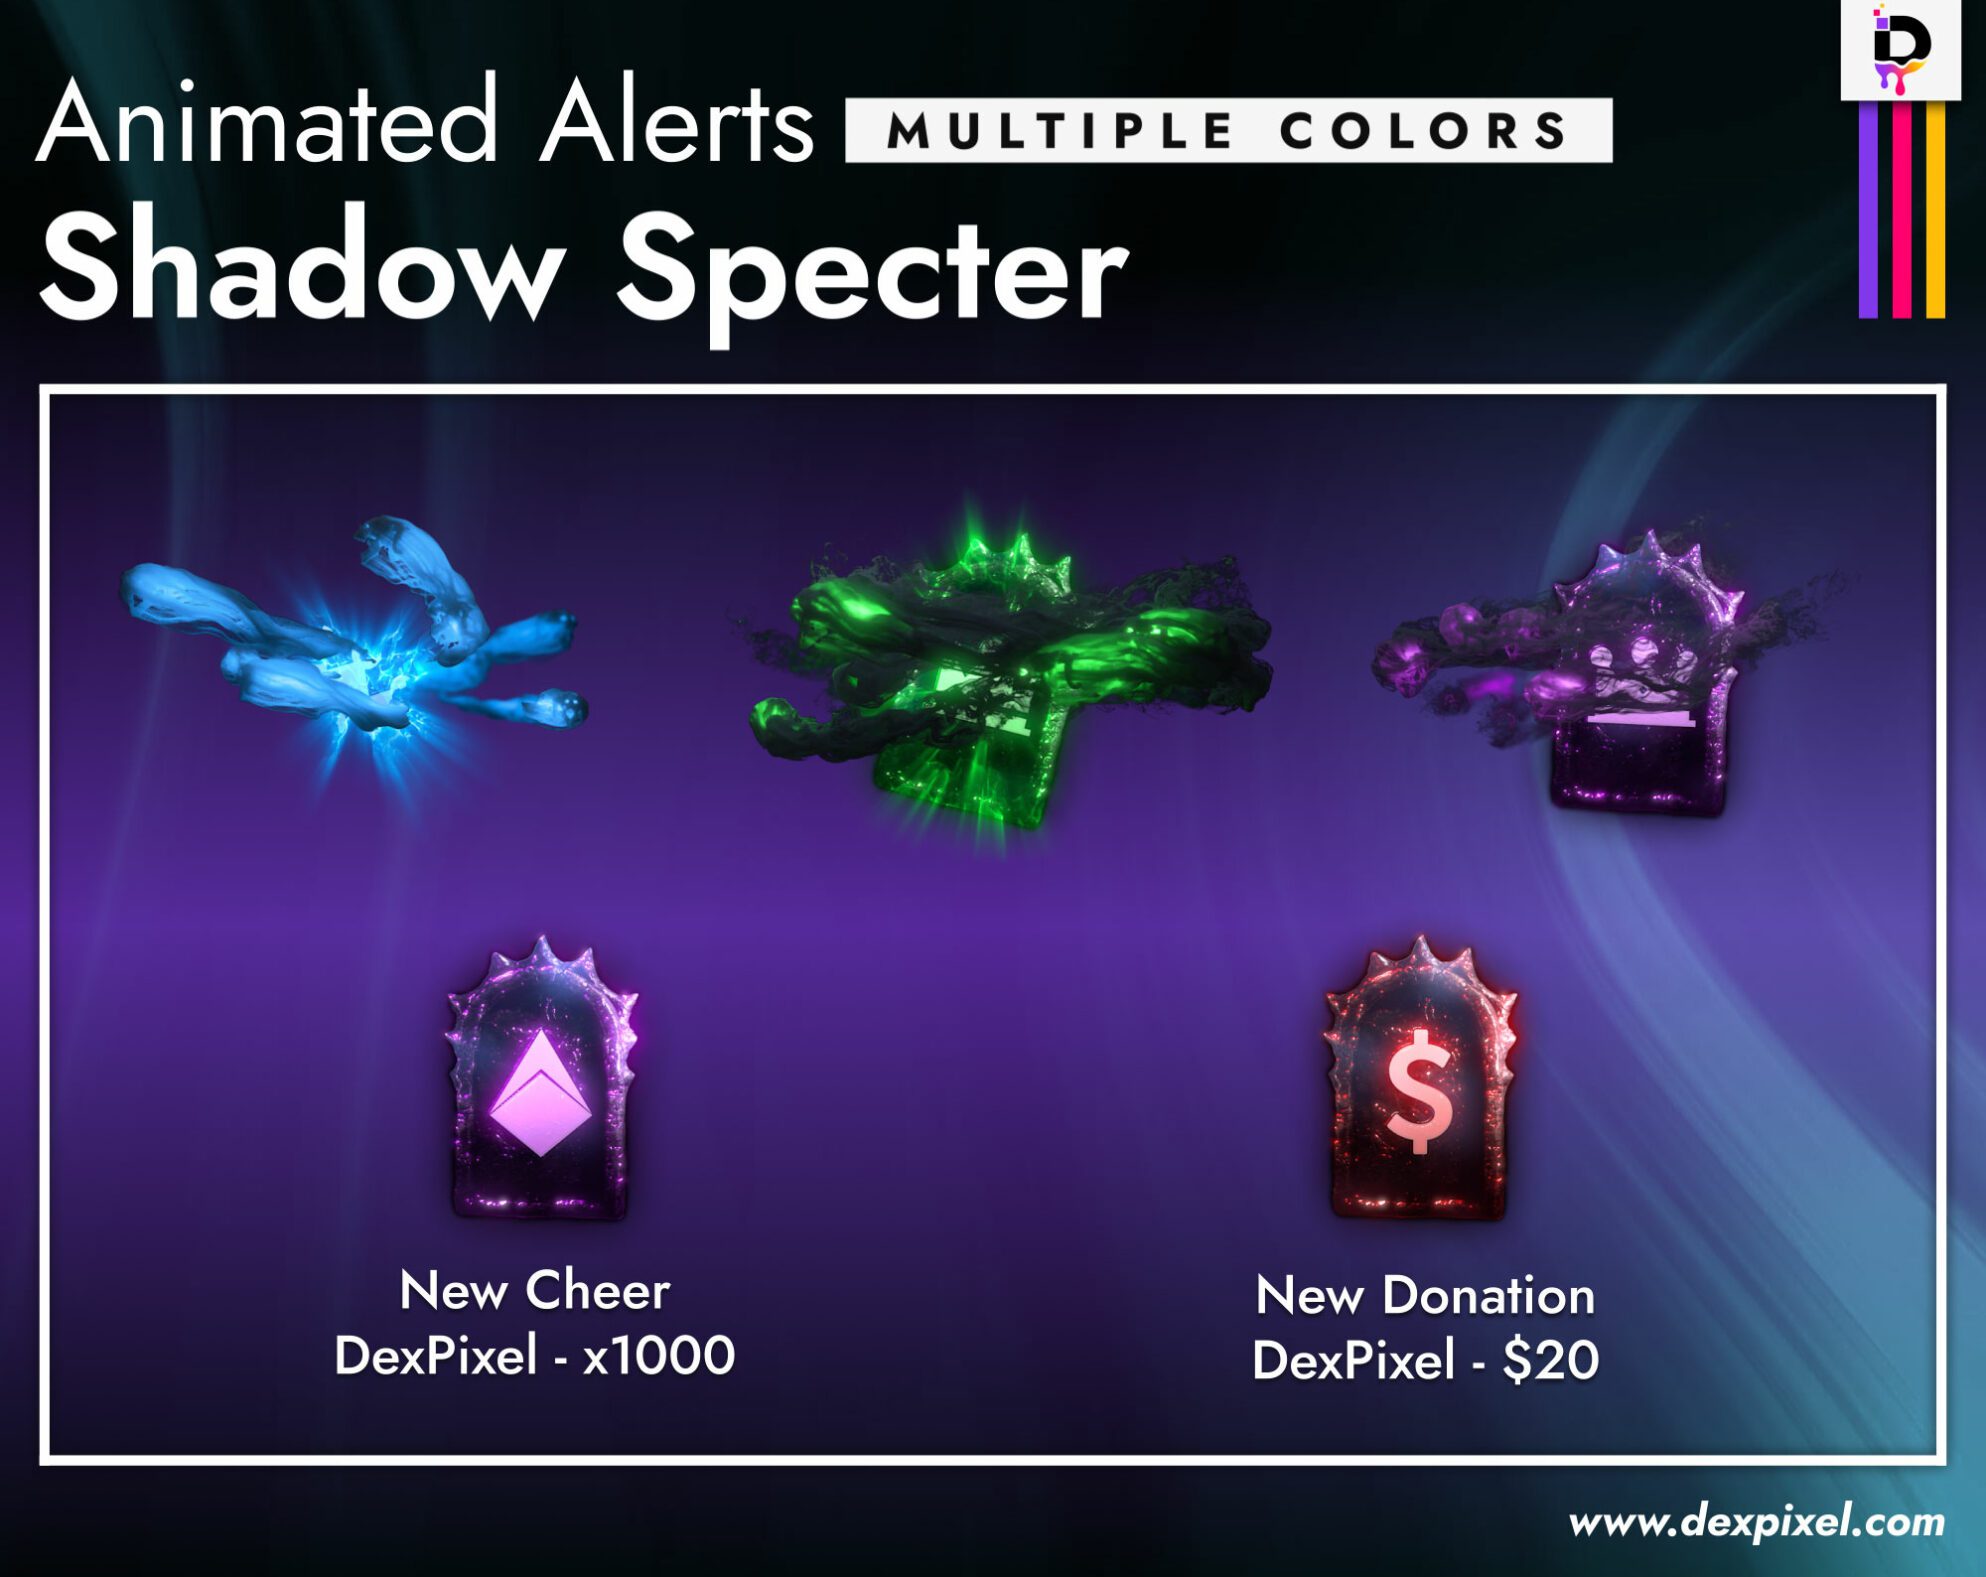 Shadow Specter Halloween Alerts